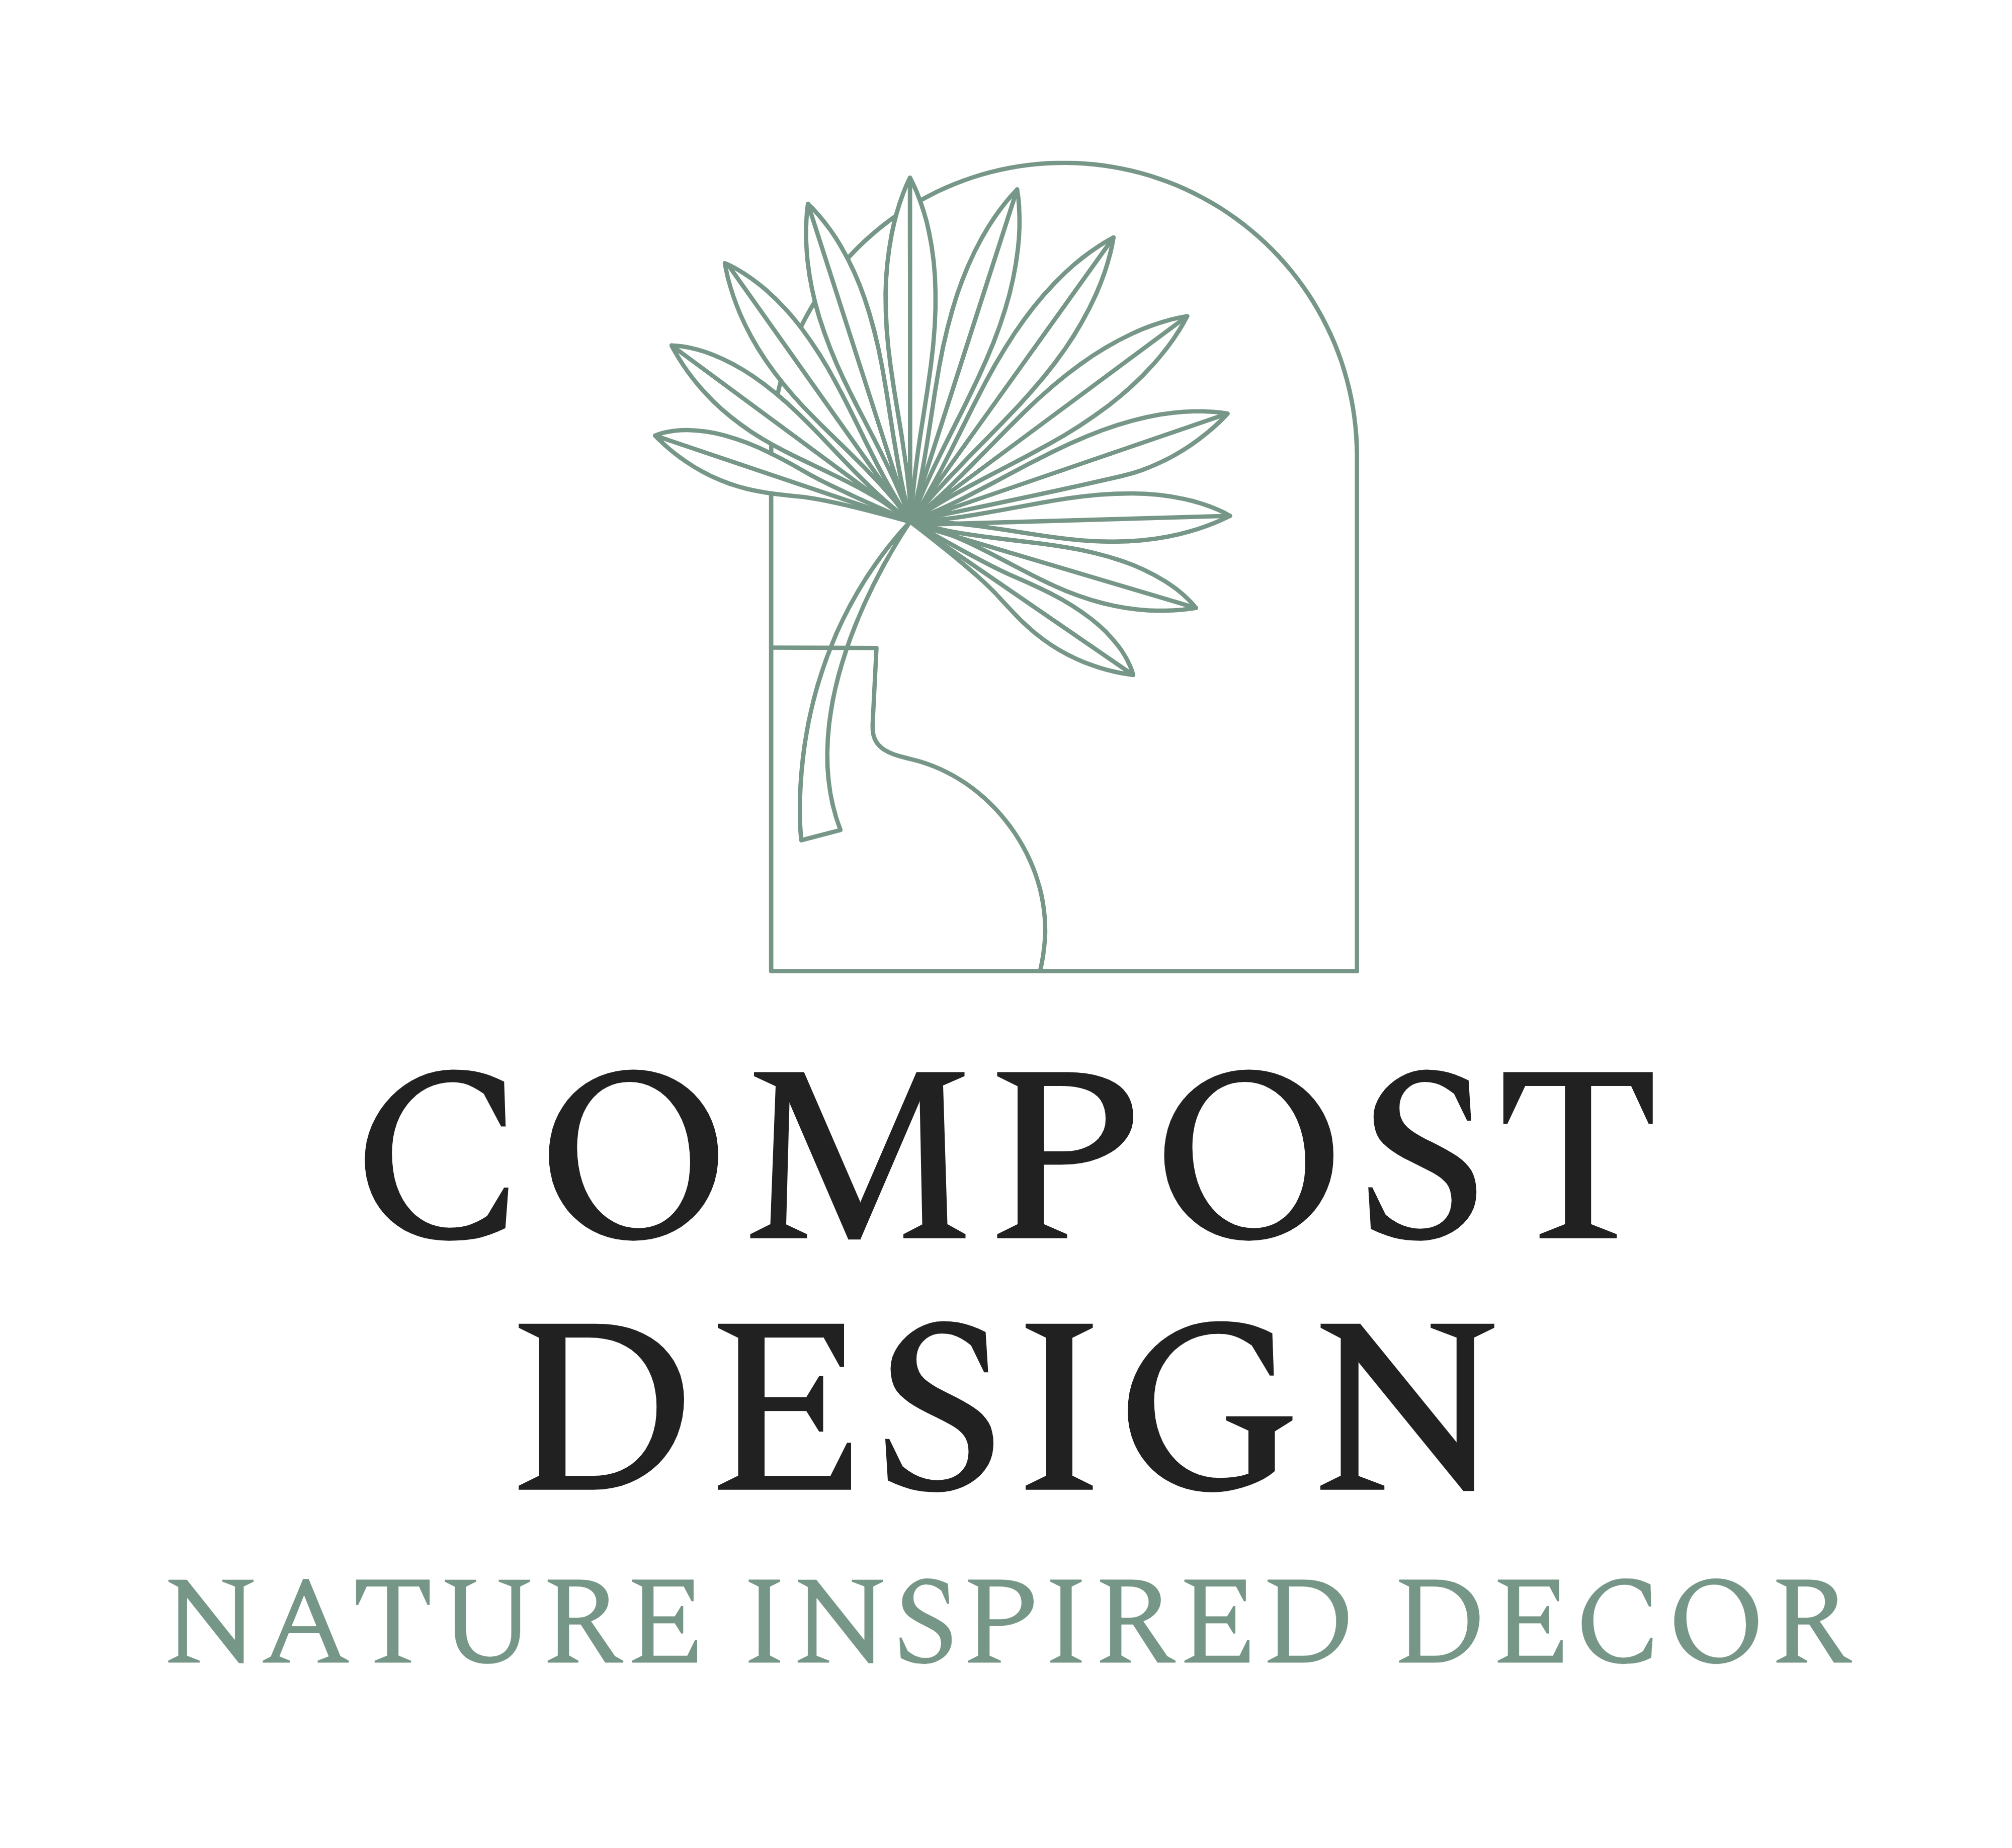 CompostDesign